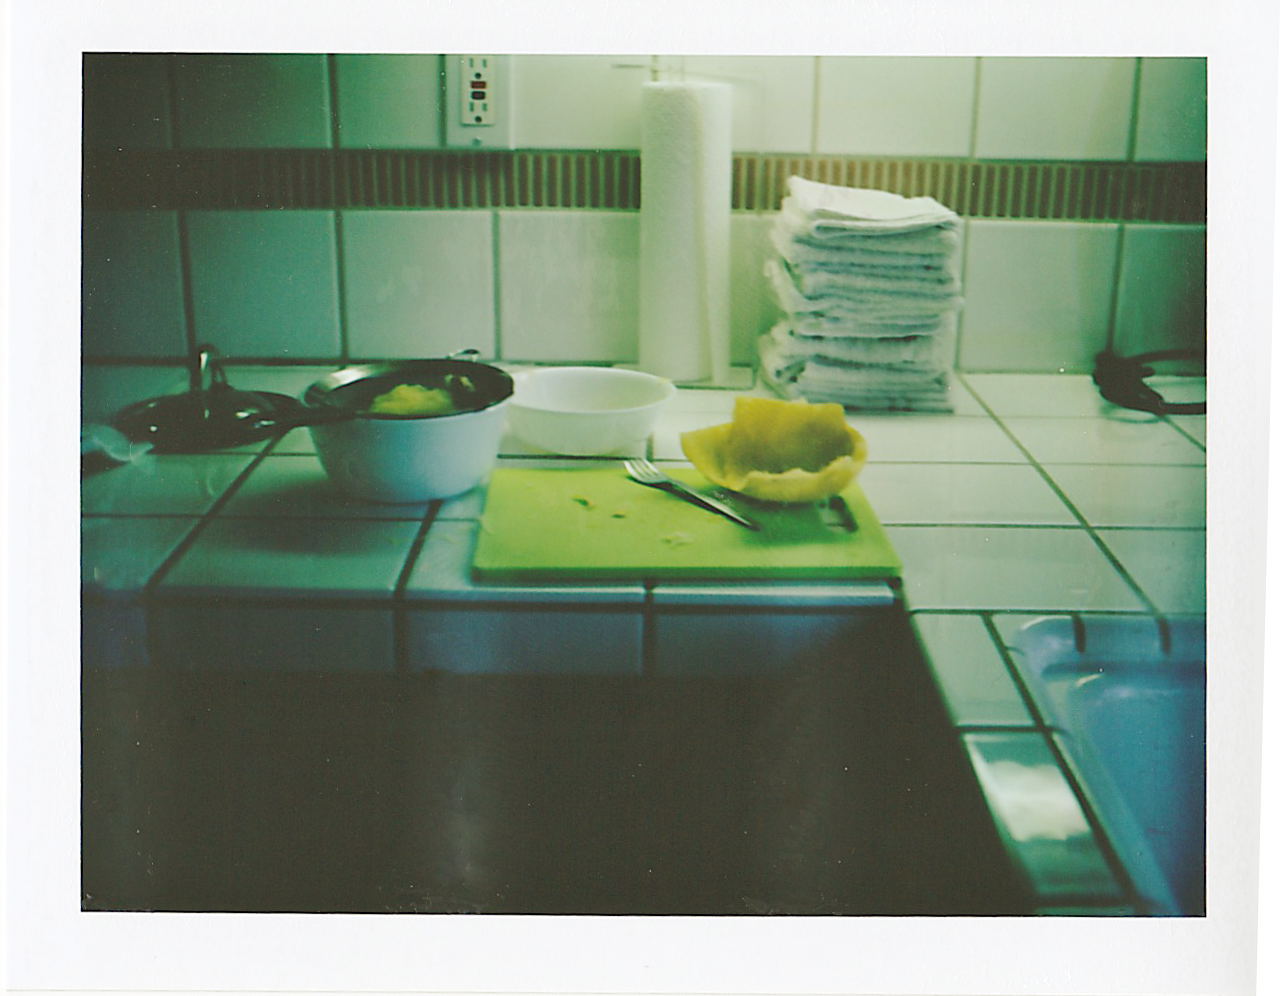 309/365: Polaroid Week IV